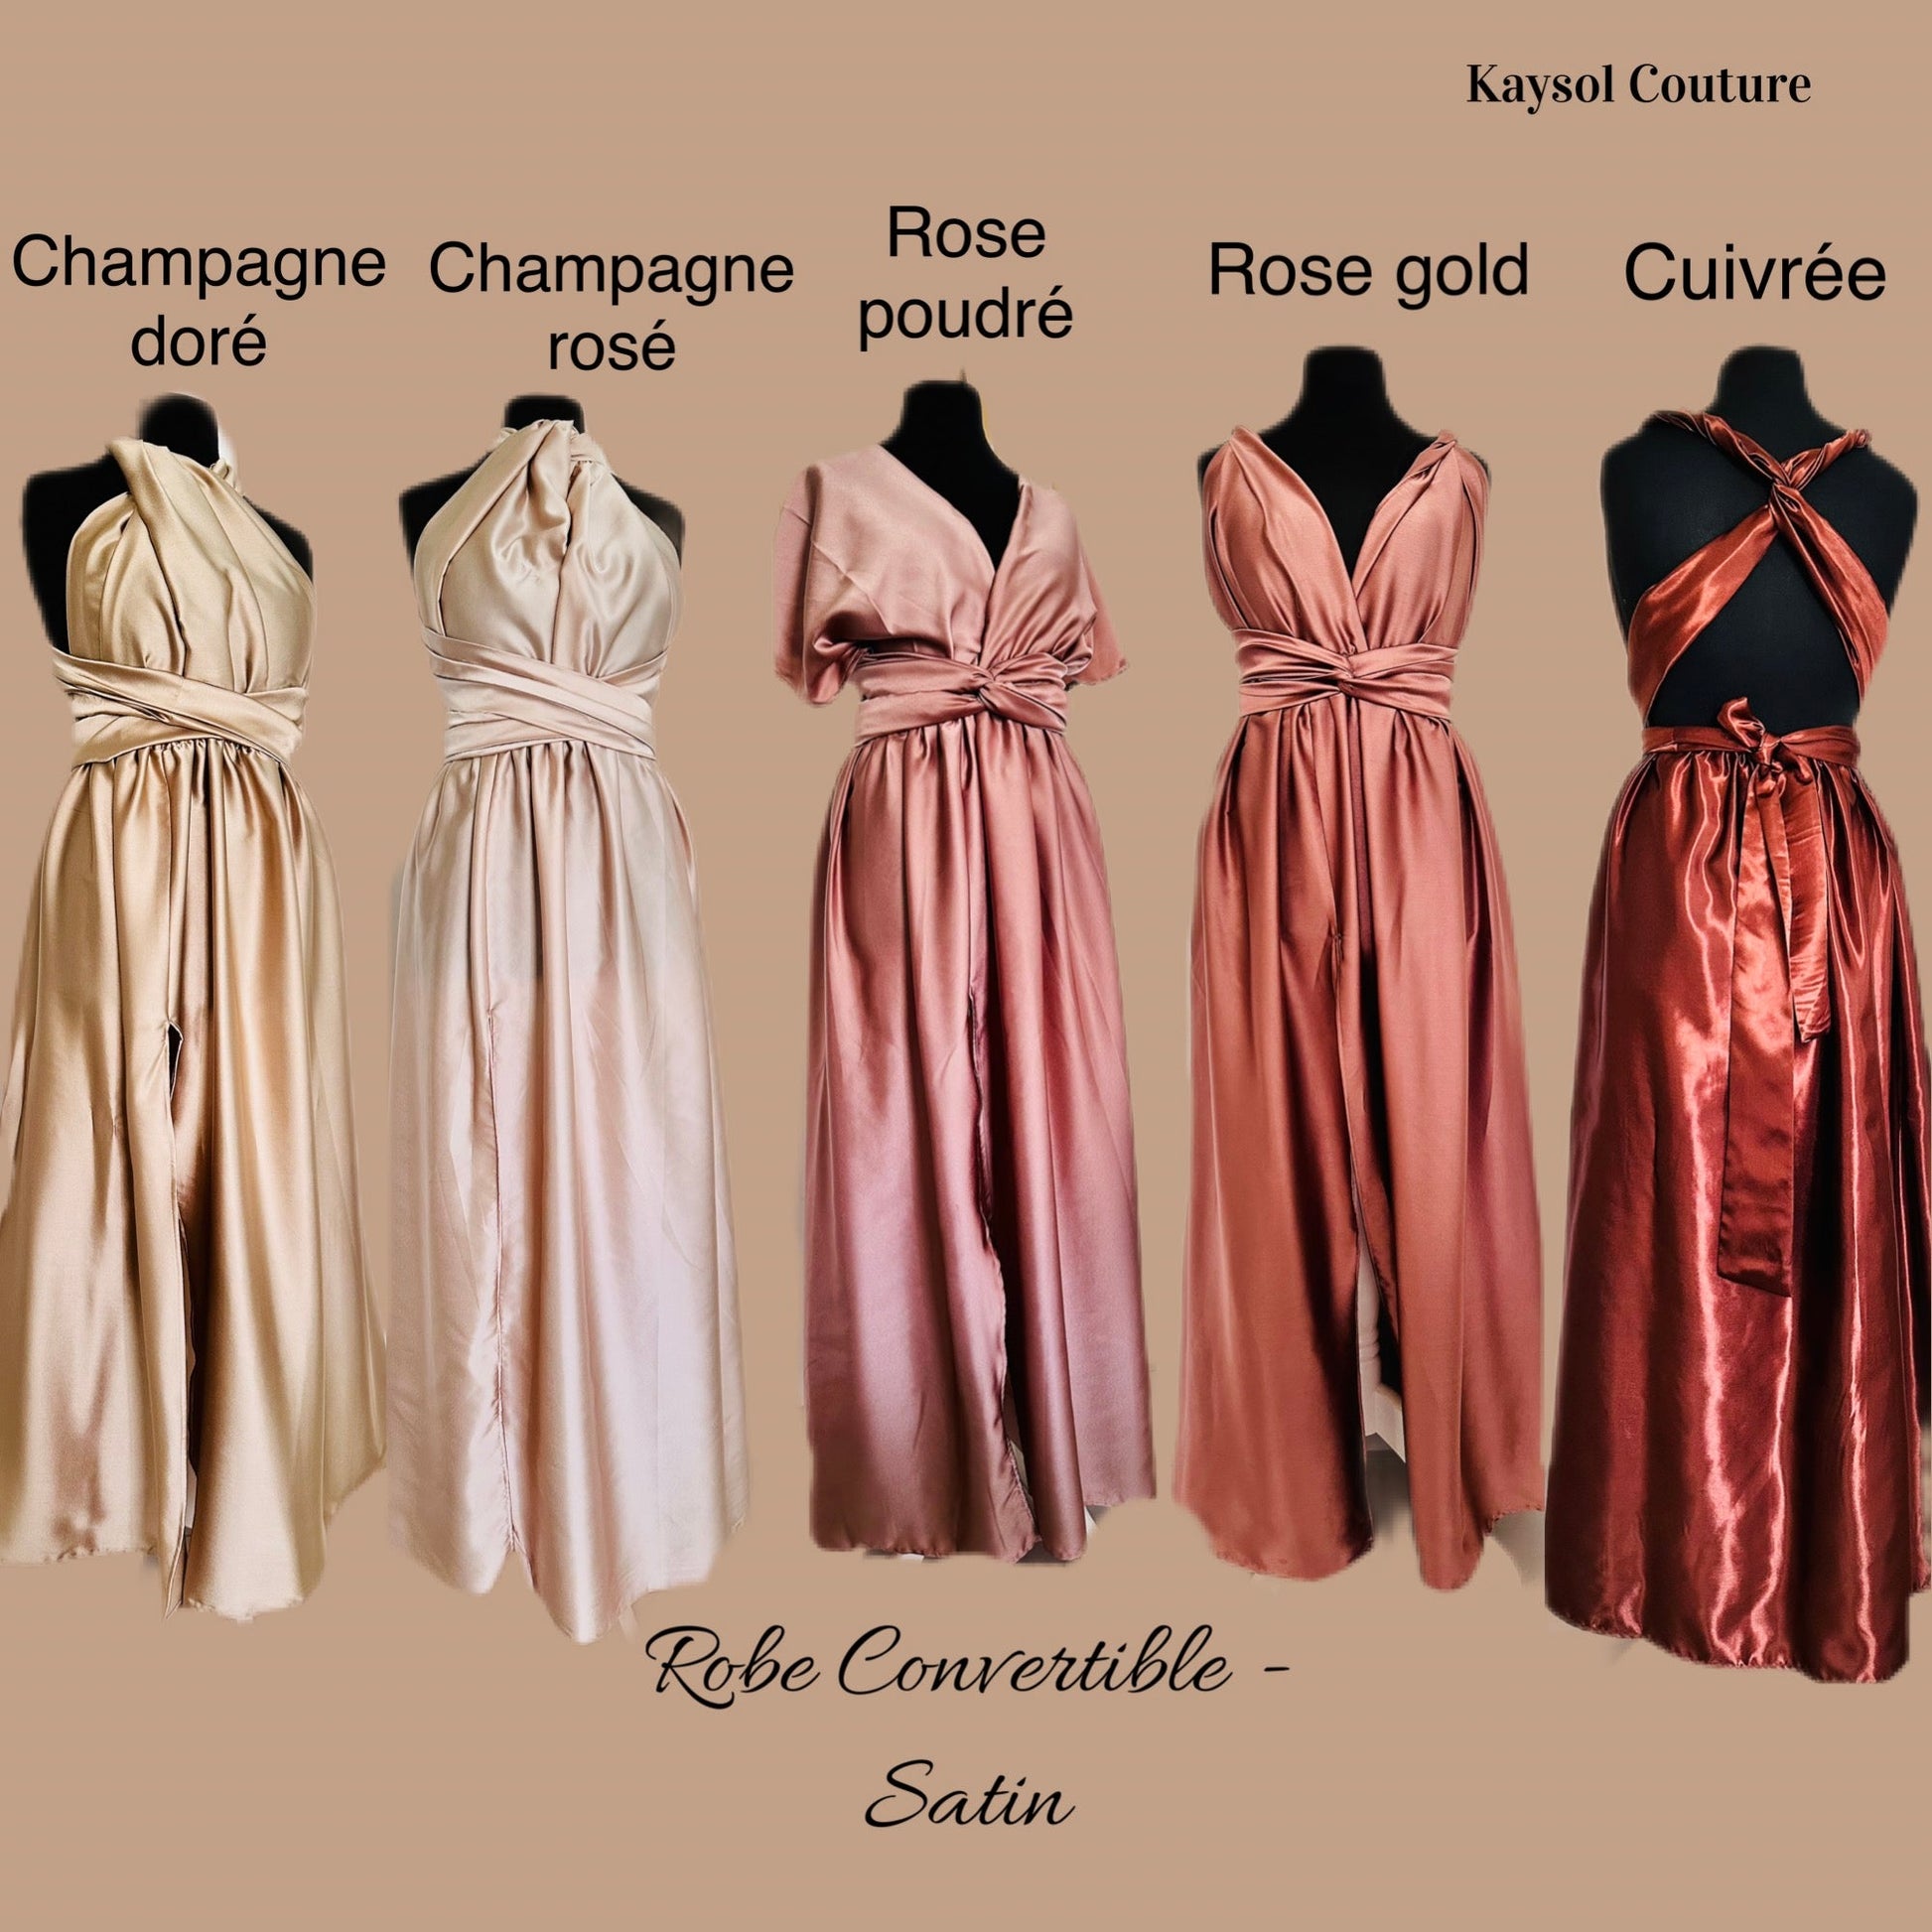 Robe convertible en Satin - Choix Couleur - Kaysol Couture